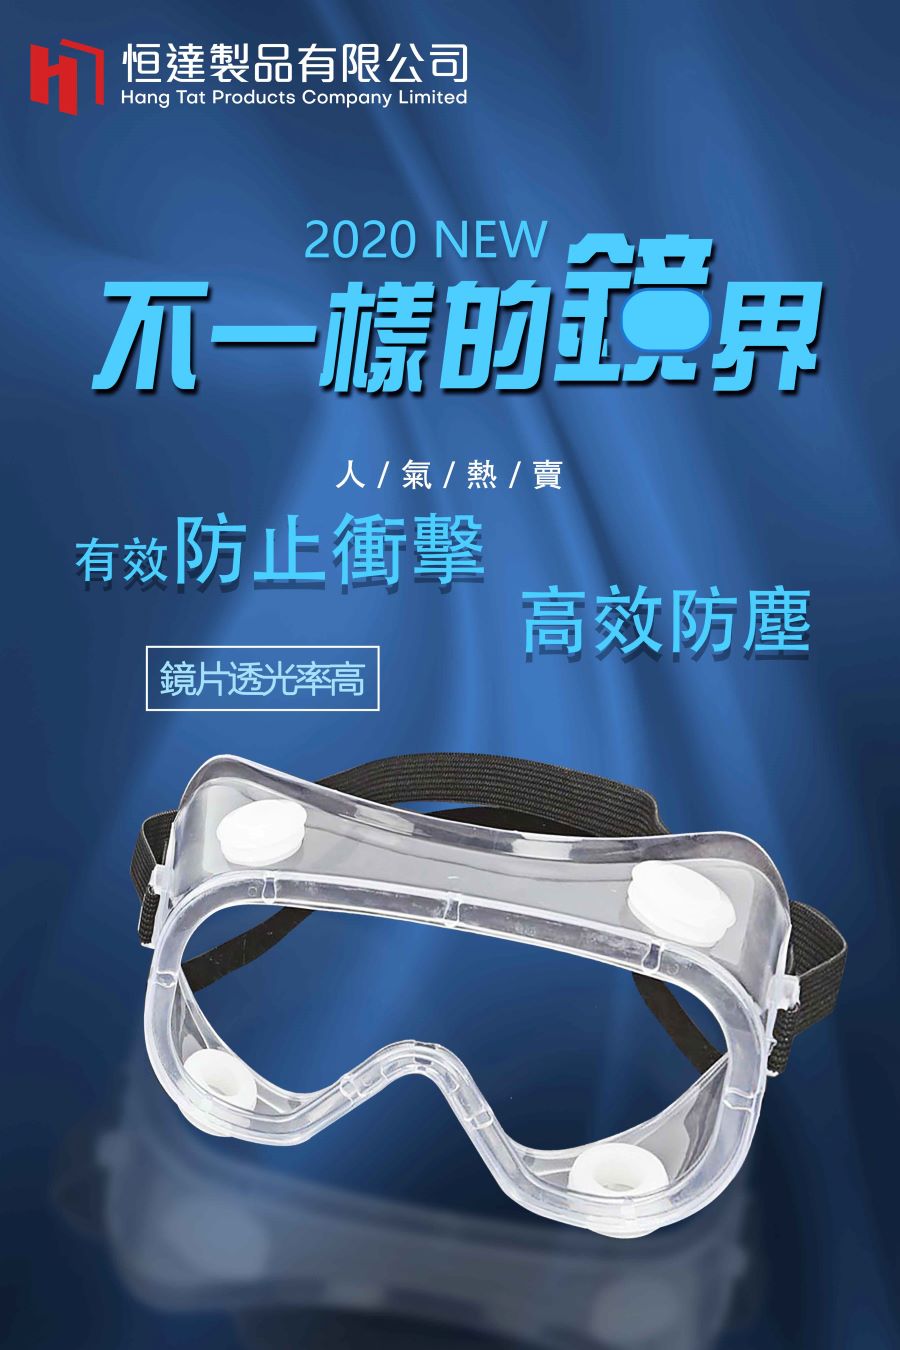 防撞防塵安全眼鏡-地盤安全眼鏡-工程施工安全眼鏡-護目鏡-工業安全眼鏡-安全眼罩-實驗室安全眼鏡-護目眼罩